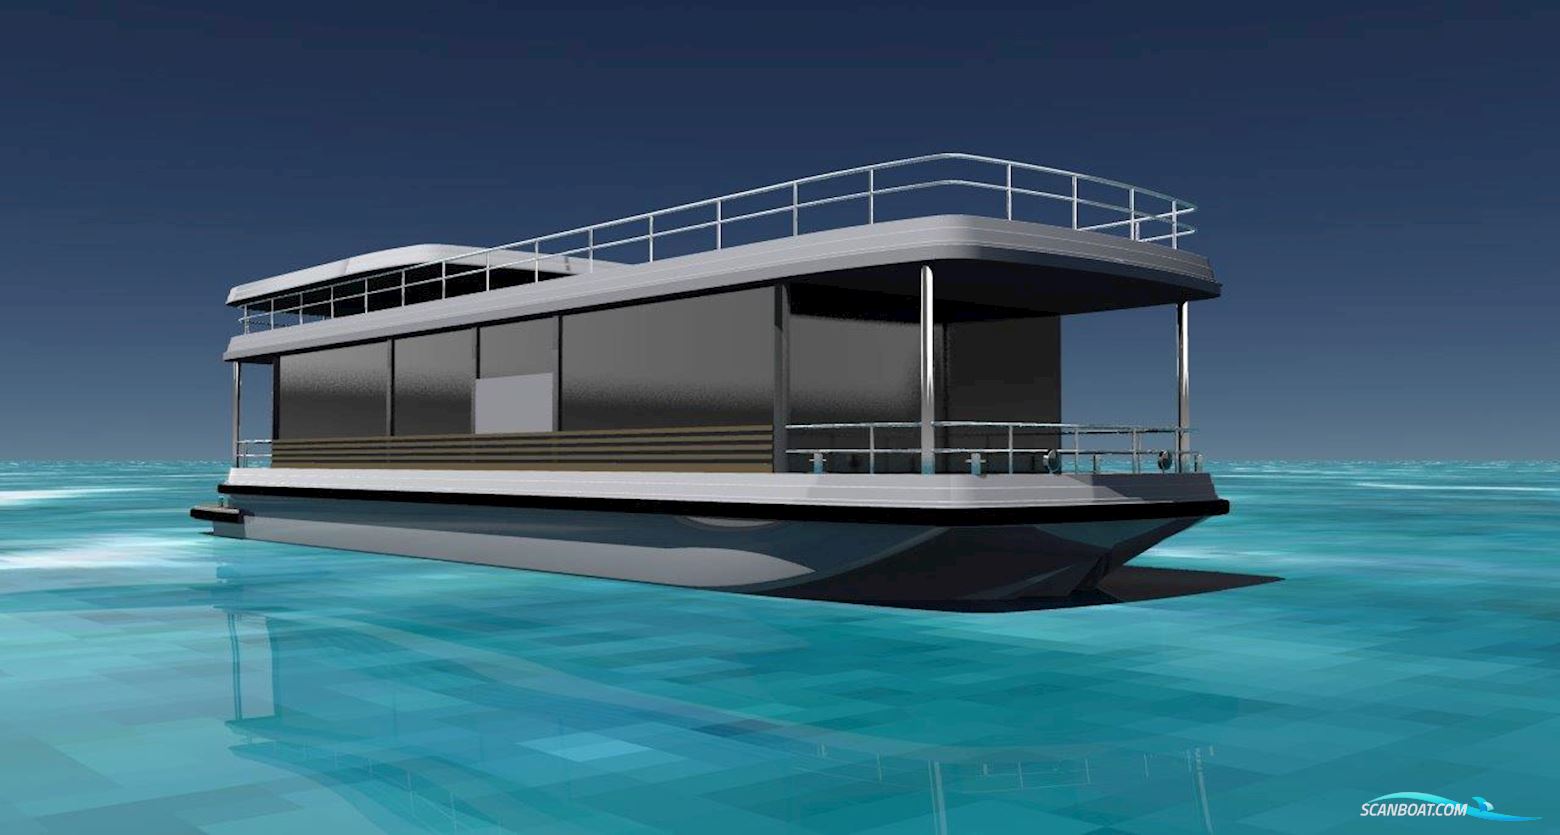 DiviNavi M-420 Houseboat Single Level Live a board / River boat 2024, The Netherlands